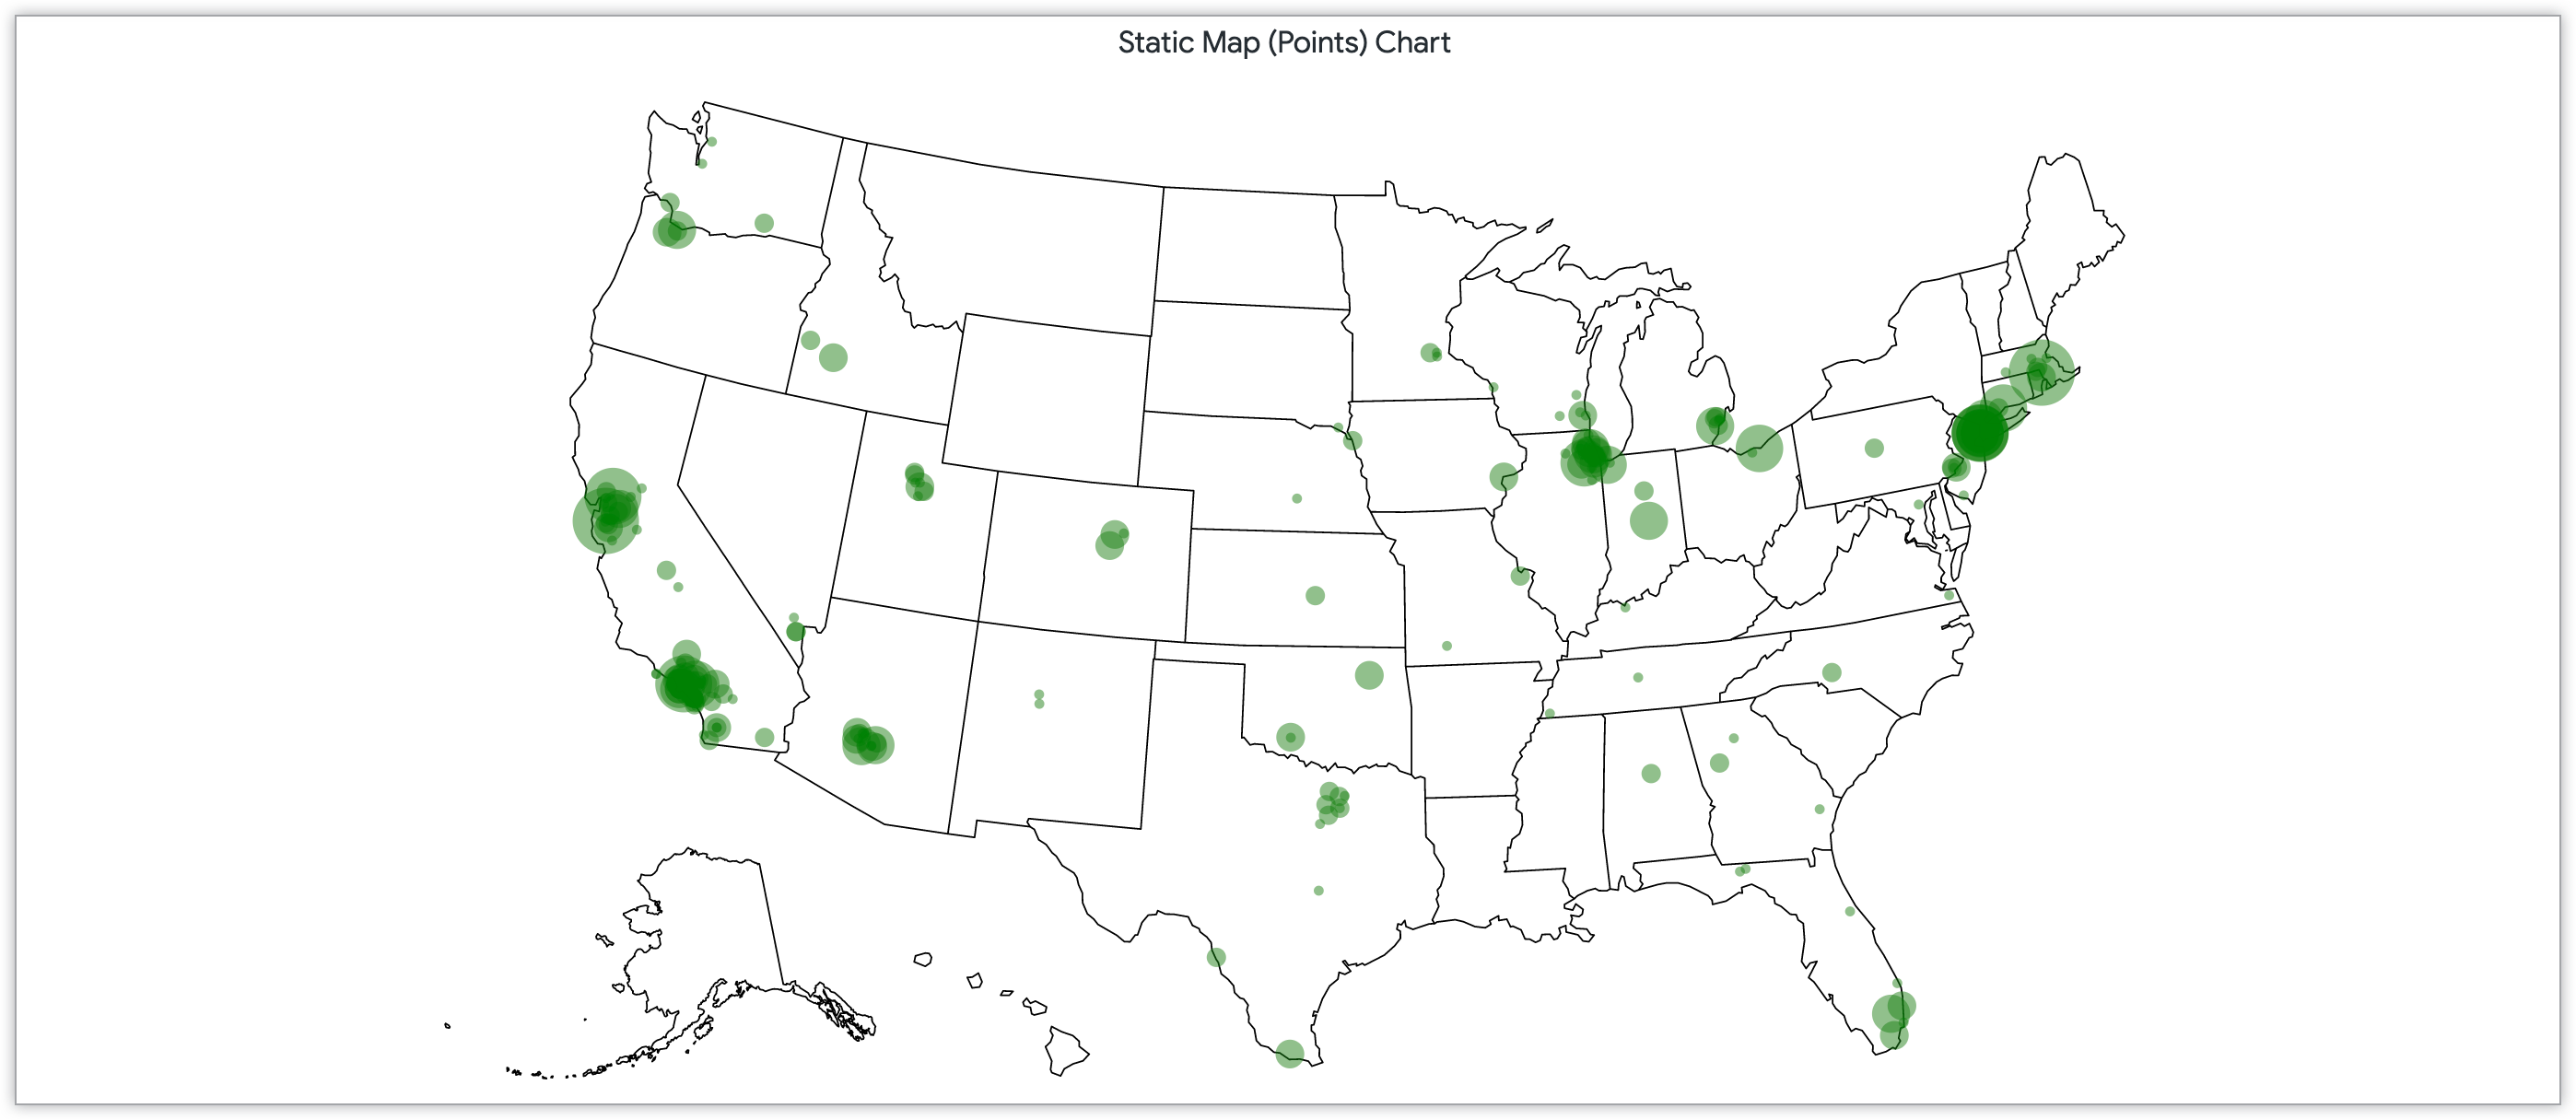 Gráfico de mapa estático con puntos por cantidad de clientes en códigos postales de Estados Unidos.